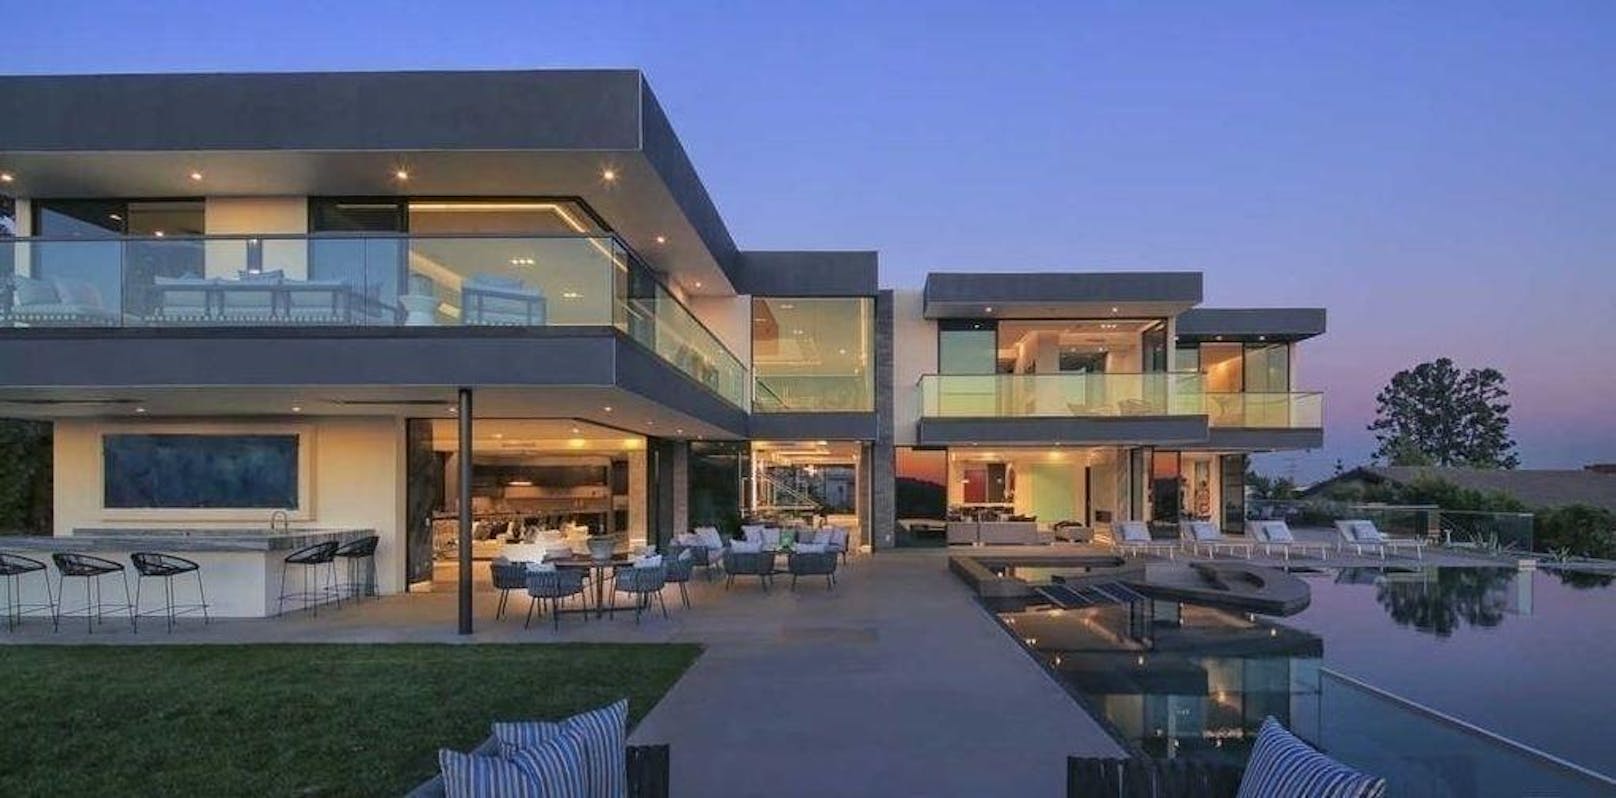 Vor kurzem hat er im Stadtteil Bel Air in Los Angeles eine Villa für über 15 Millionen Dollar gekauft.